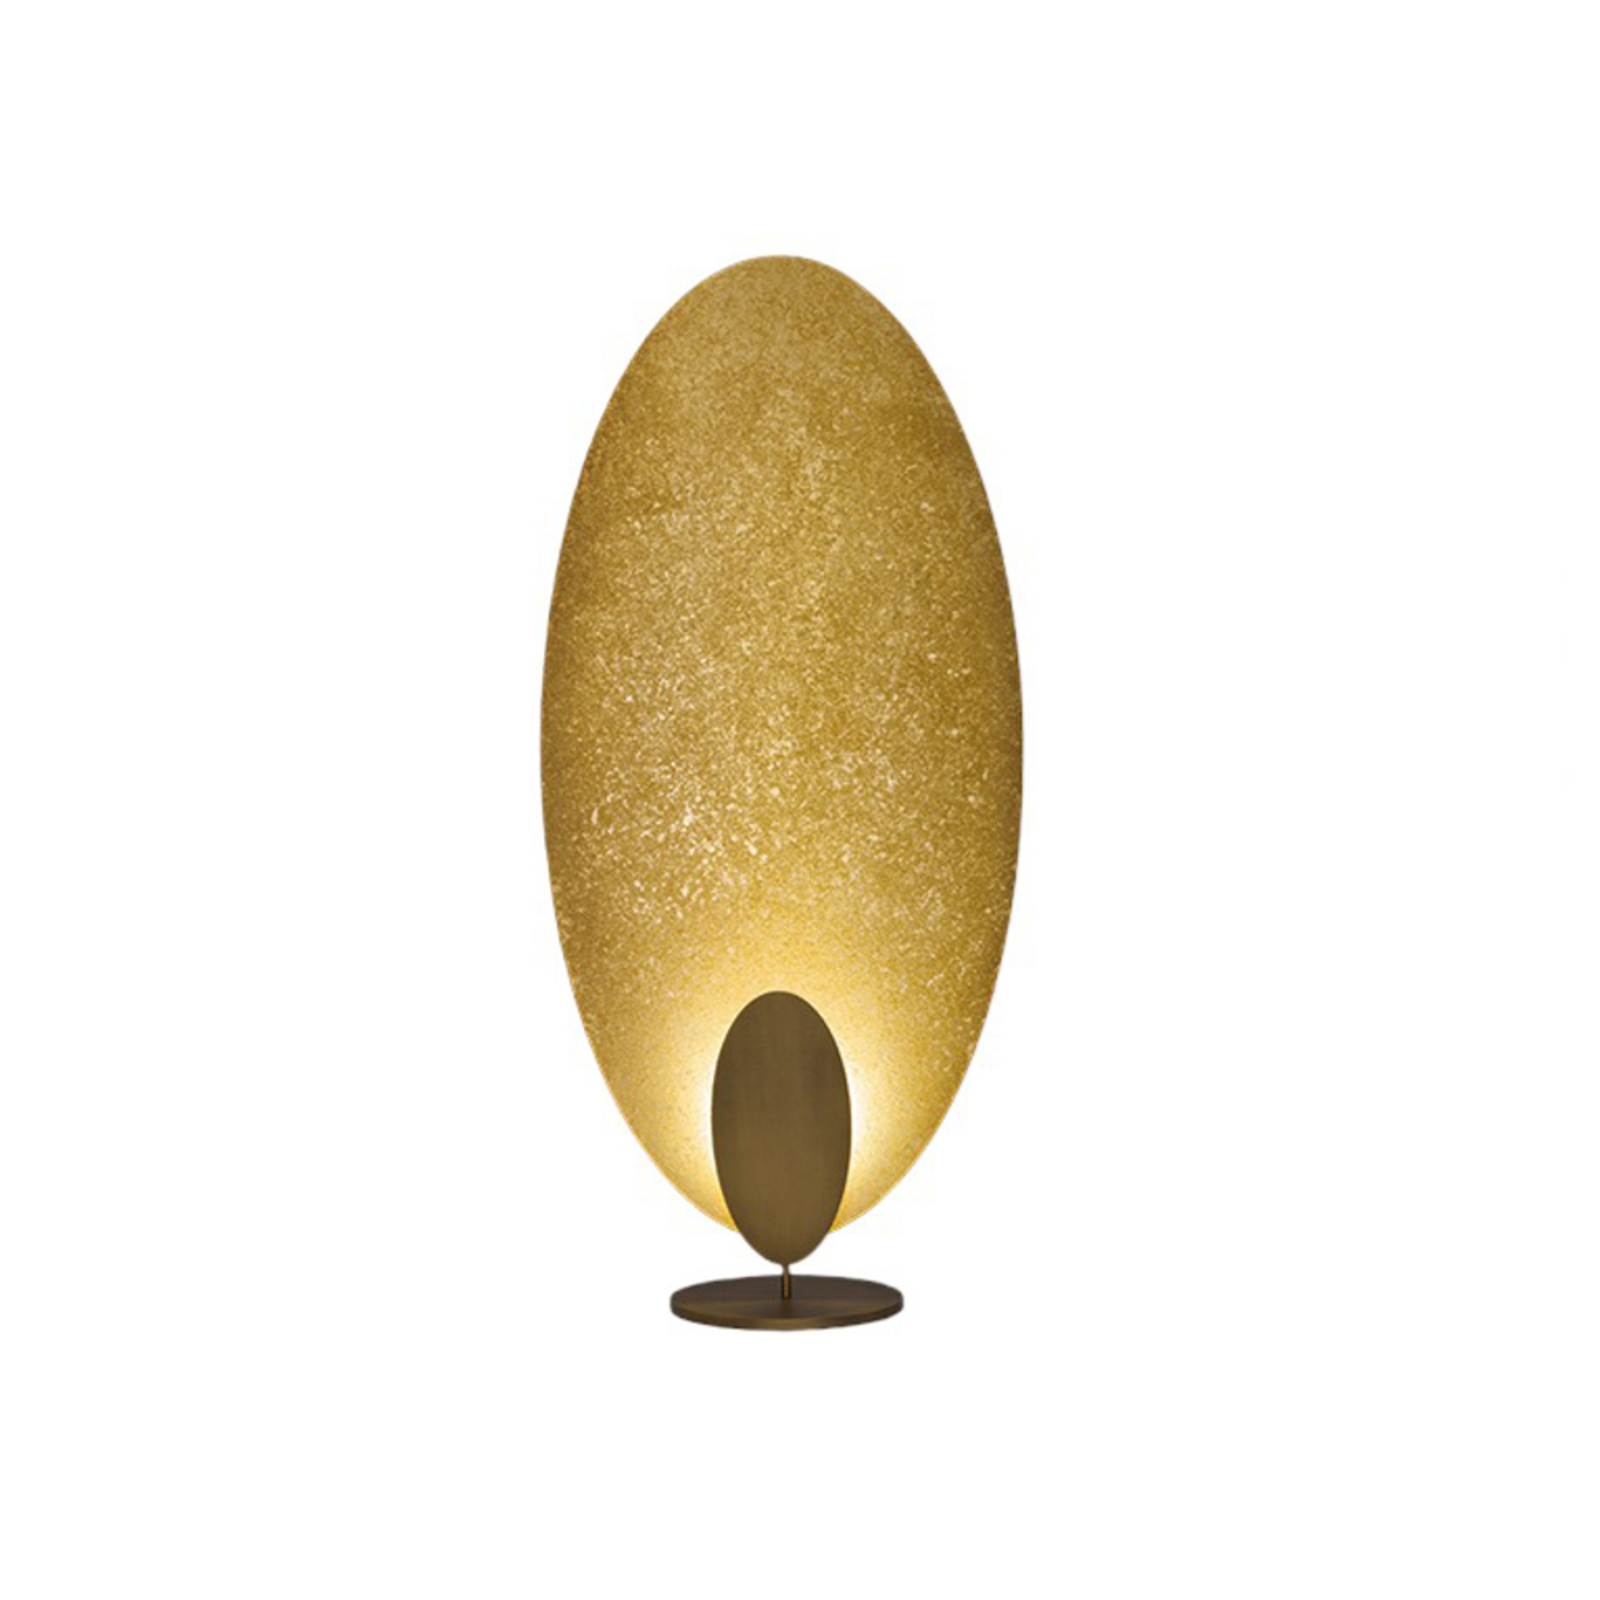 ICONE Masai vloerlamp 53W 927 1-lamp goud/brons